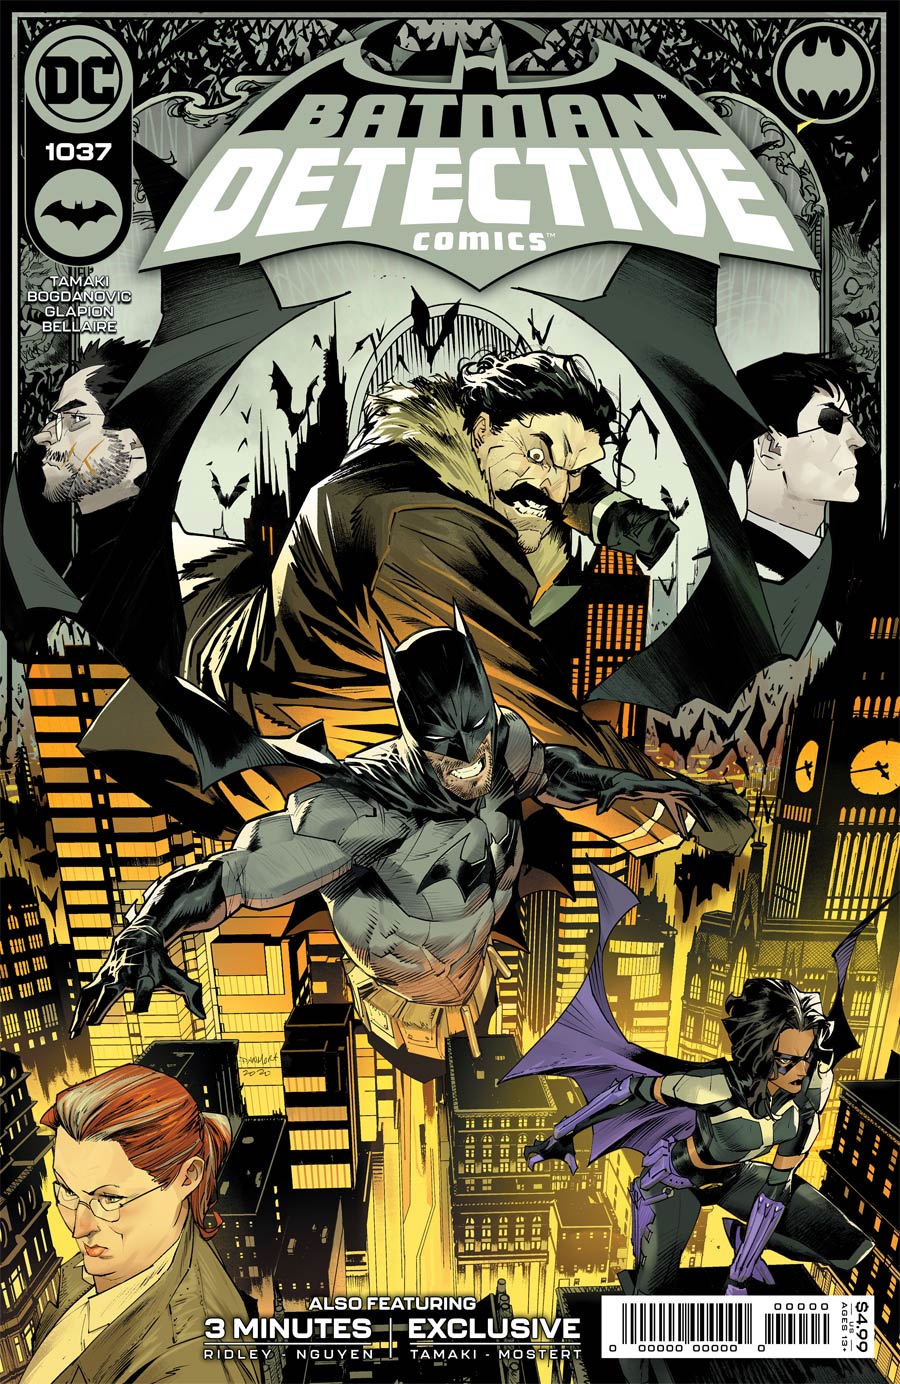 DC Comics - Detective Comics Vol 2 #1037